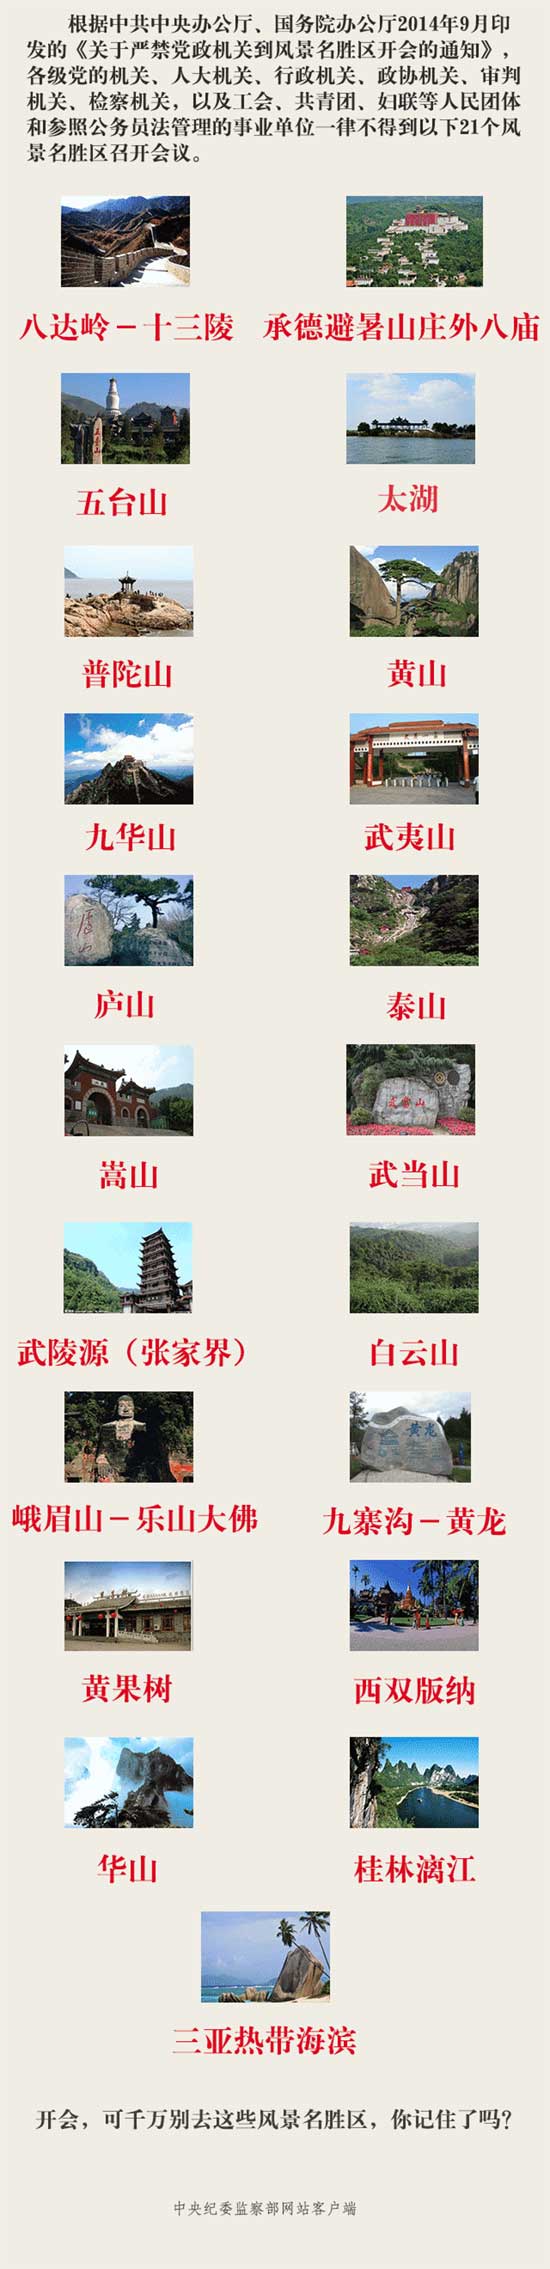 中纪委明确规定21个景区禁止开会　武夷山在列